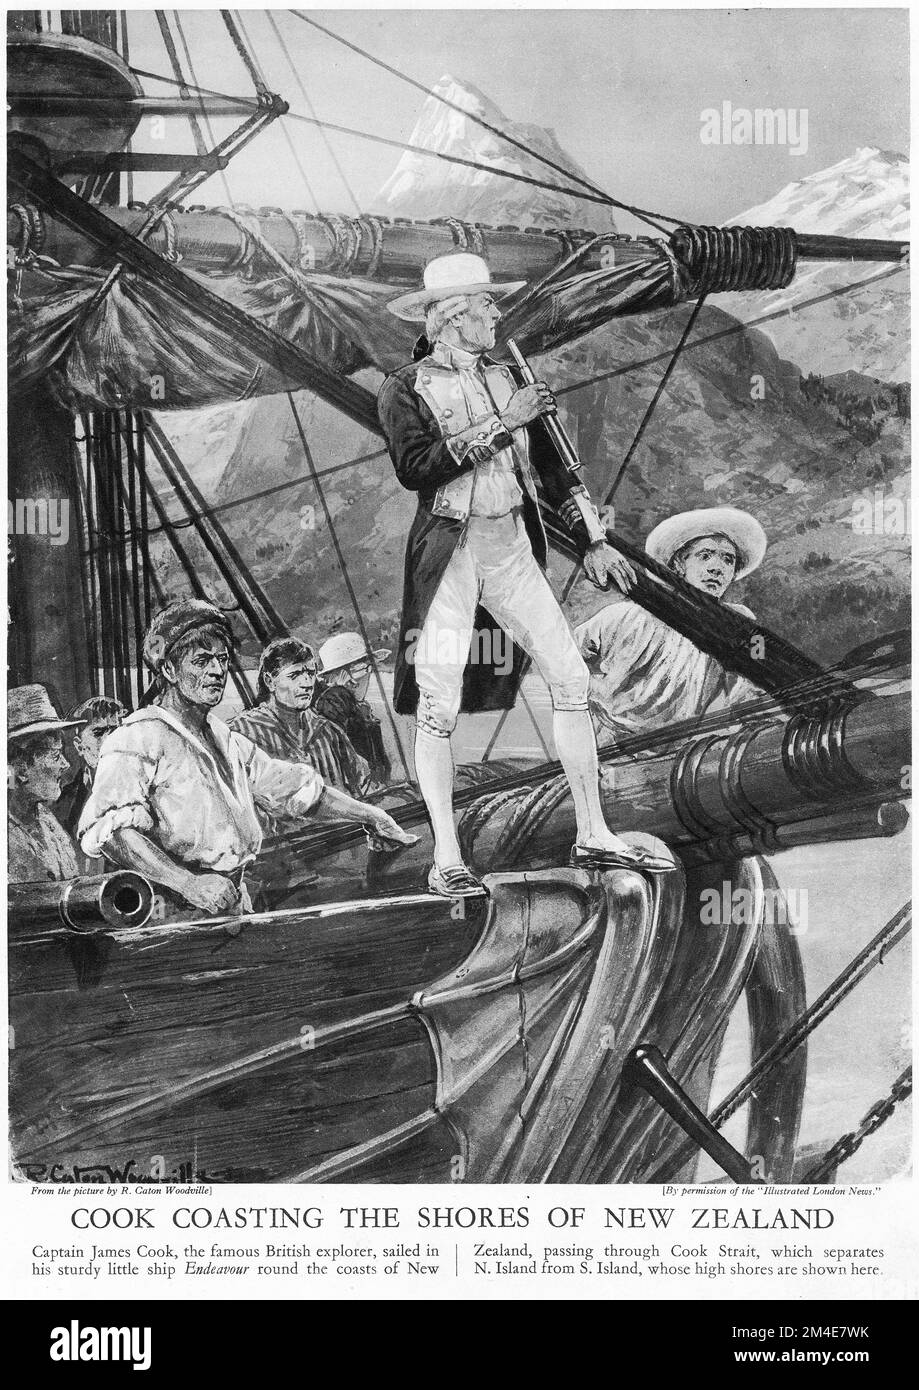 Ein Halbton von Captain James Cook, der die Küste Neuseelands mit einem sehr fantasievollen Hut fährt! Aus einer Lehrzeitschrift 1927. Cook besuchte Neuseeland in den 1700er Jahren drei Mal Stockfoto